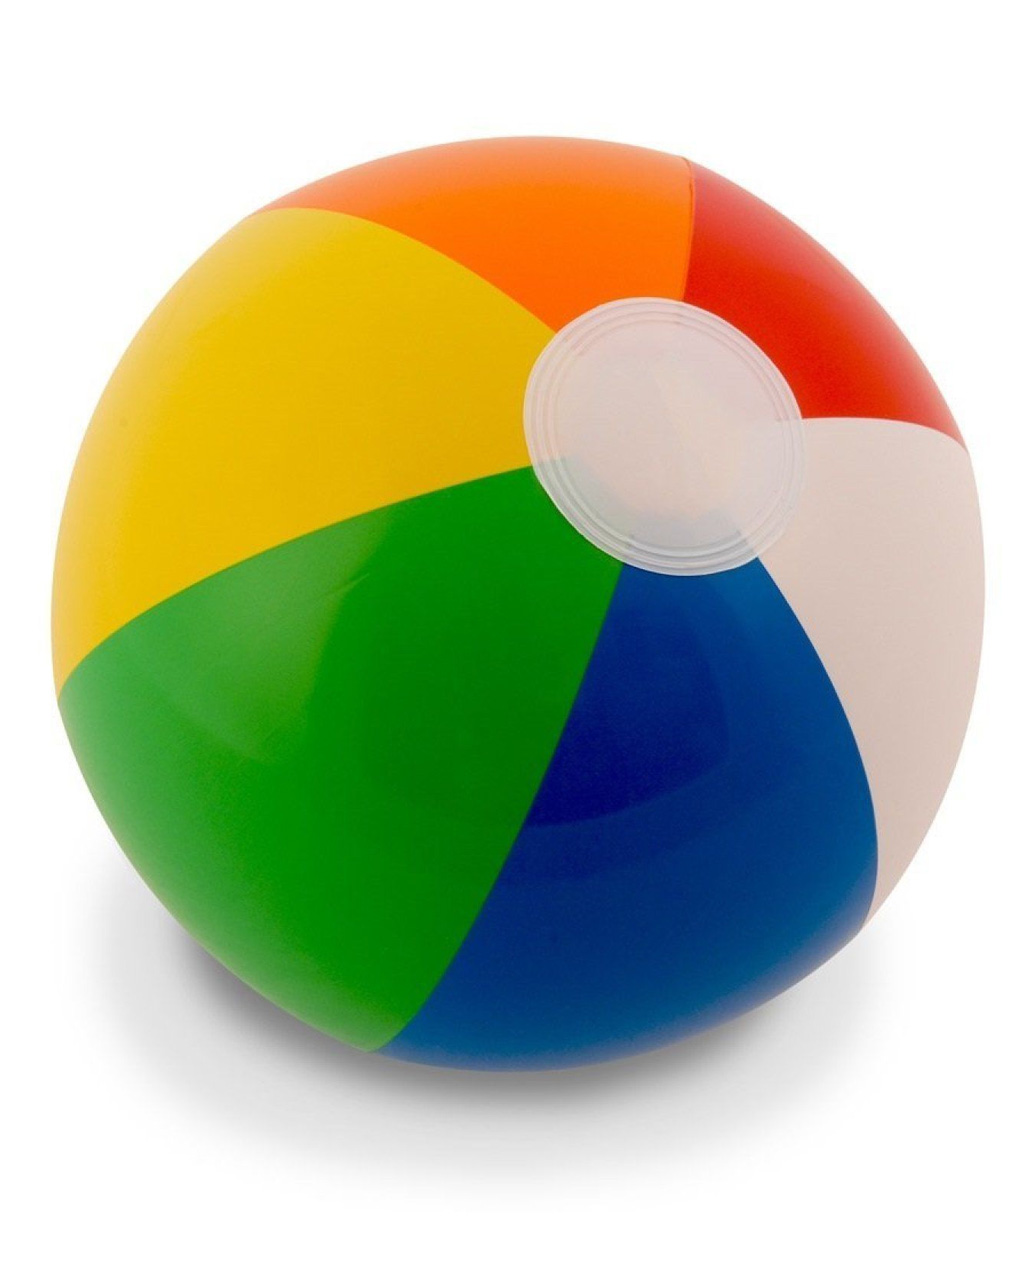 Wasserball Regenbogenfarben 25 cm NEU OVP Strandball Sommer Badespaß Sport 